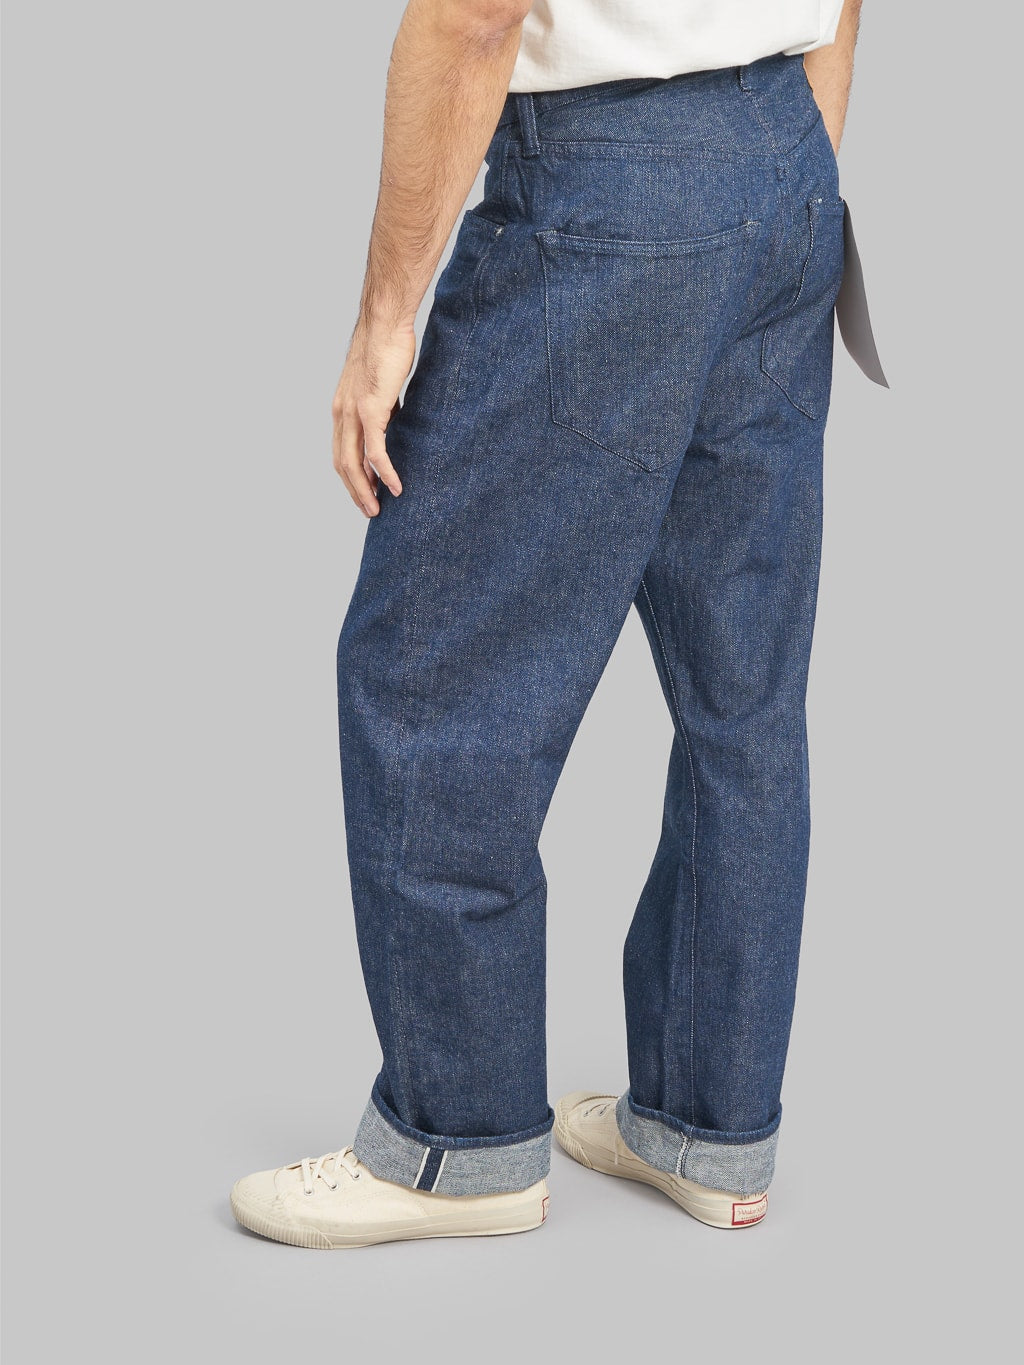 fullcount 1121 duke original selvedge denim super wide jeans fitting